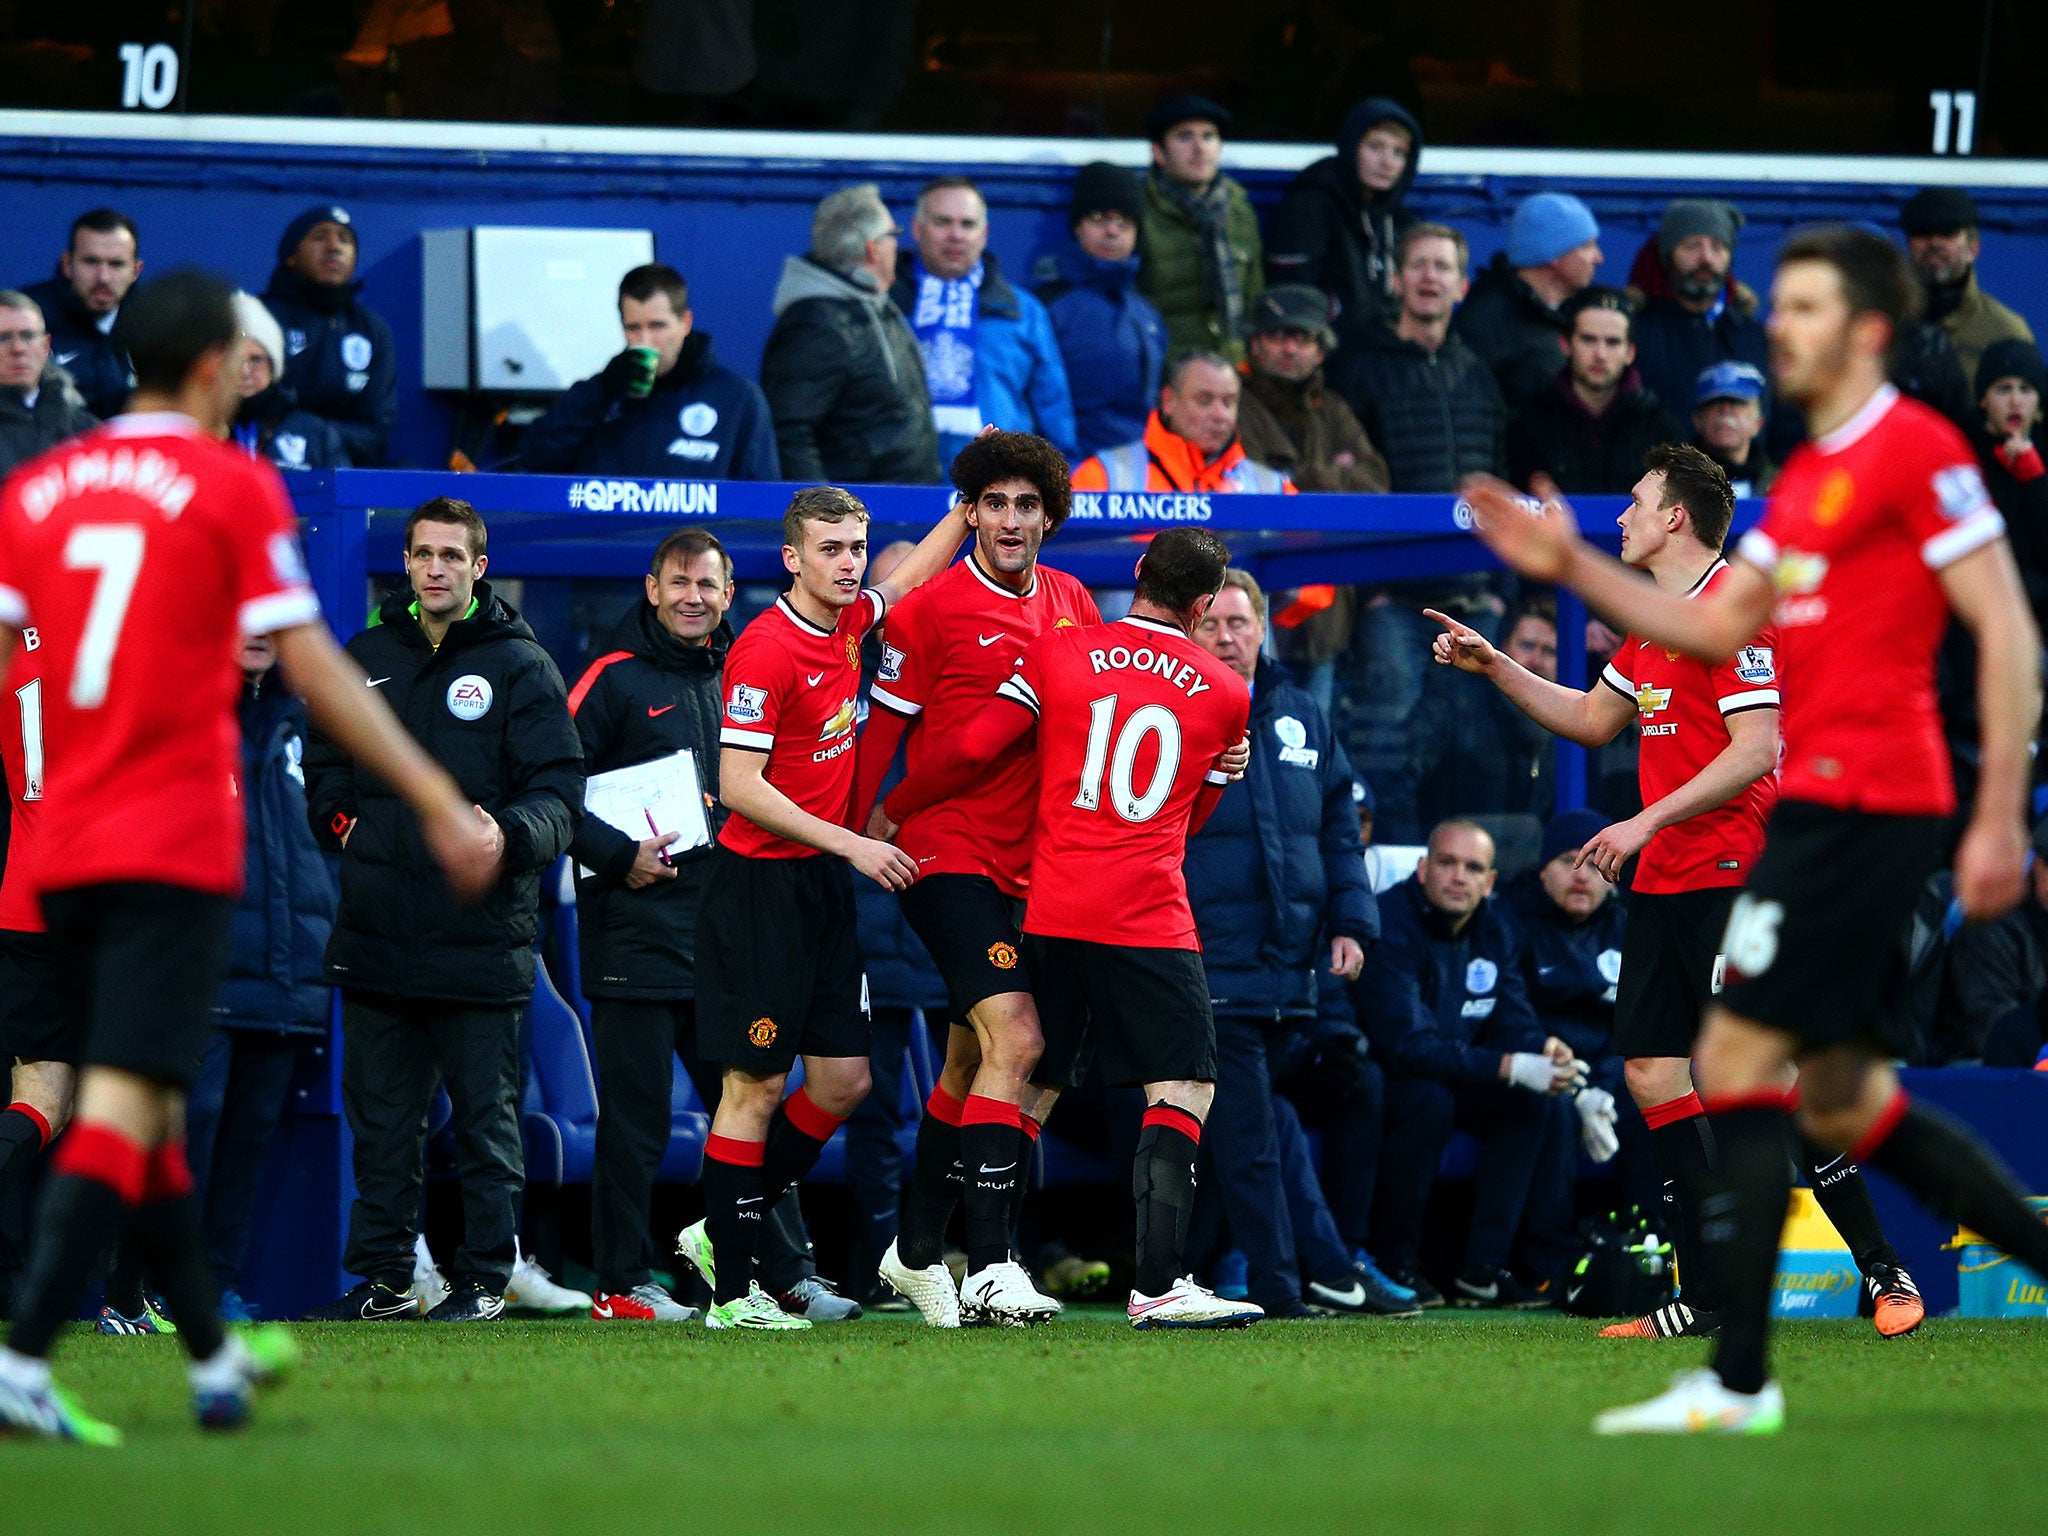 Marouane Fellaini celebrates with his Manchester United team-mates